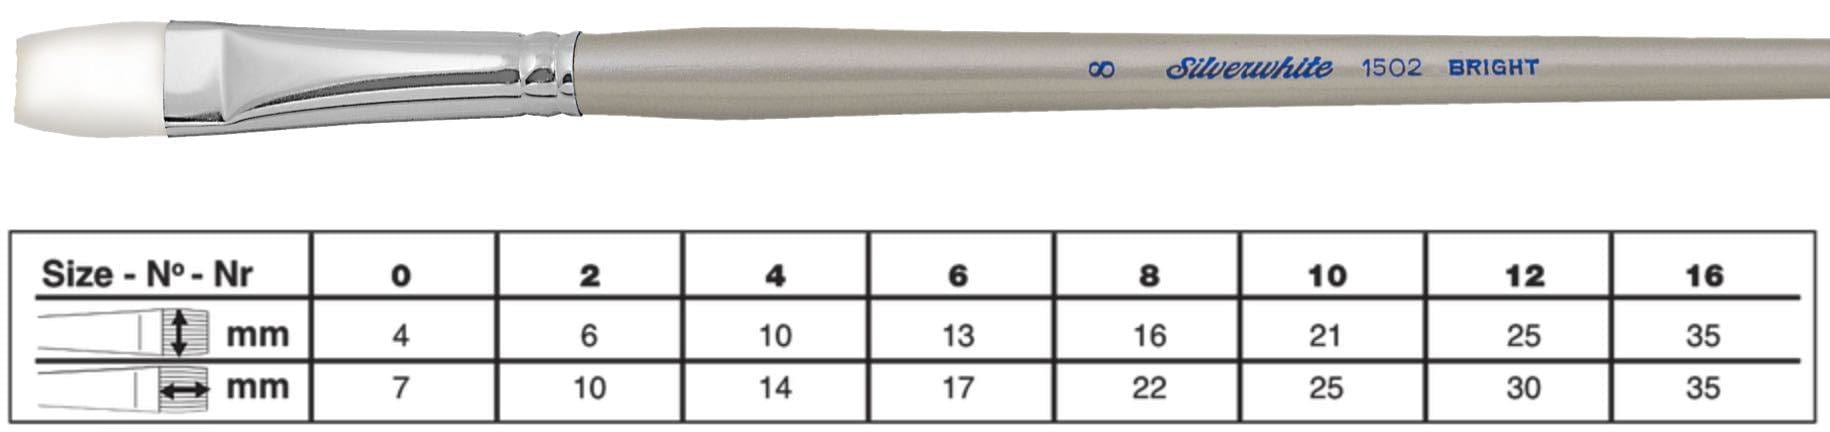 SILVER BRUSH SILVER BRUSH 0 (4mm x 7mm) Silver Brush 1502 Silverwhite Long Handle